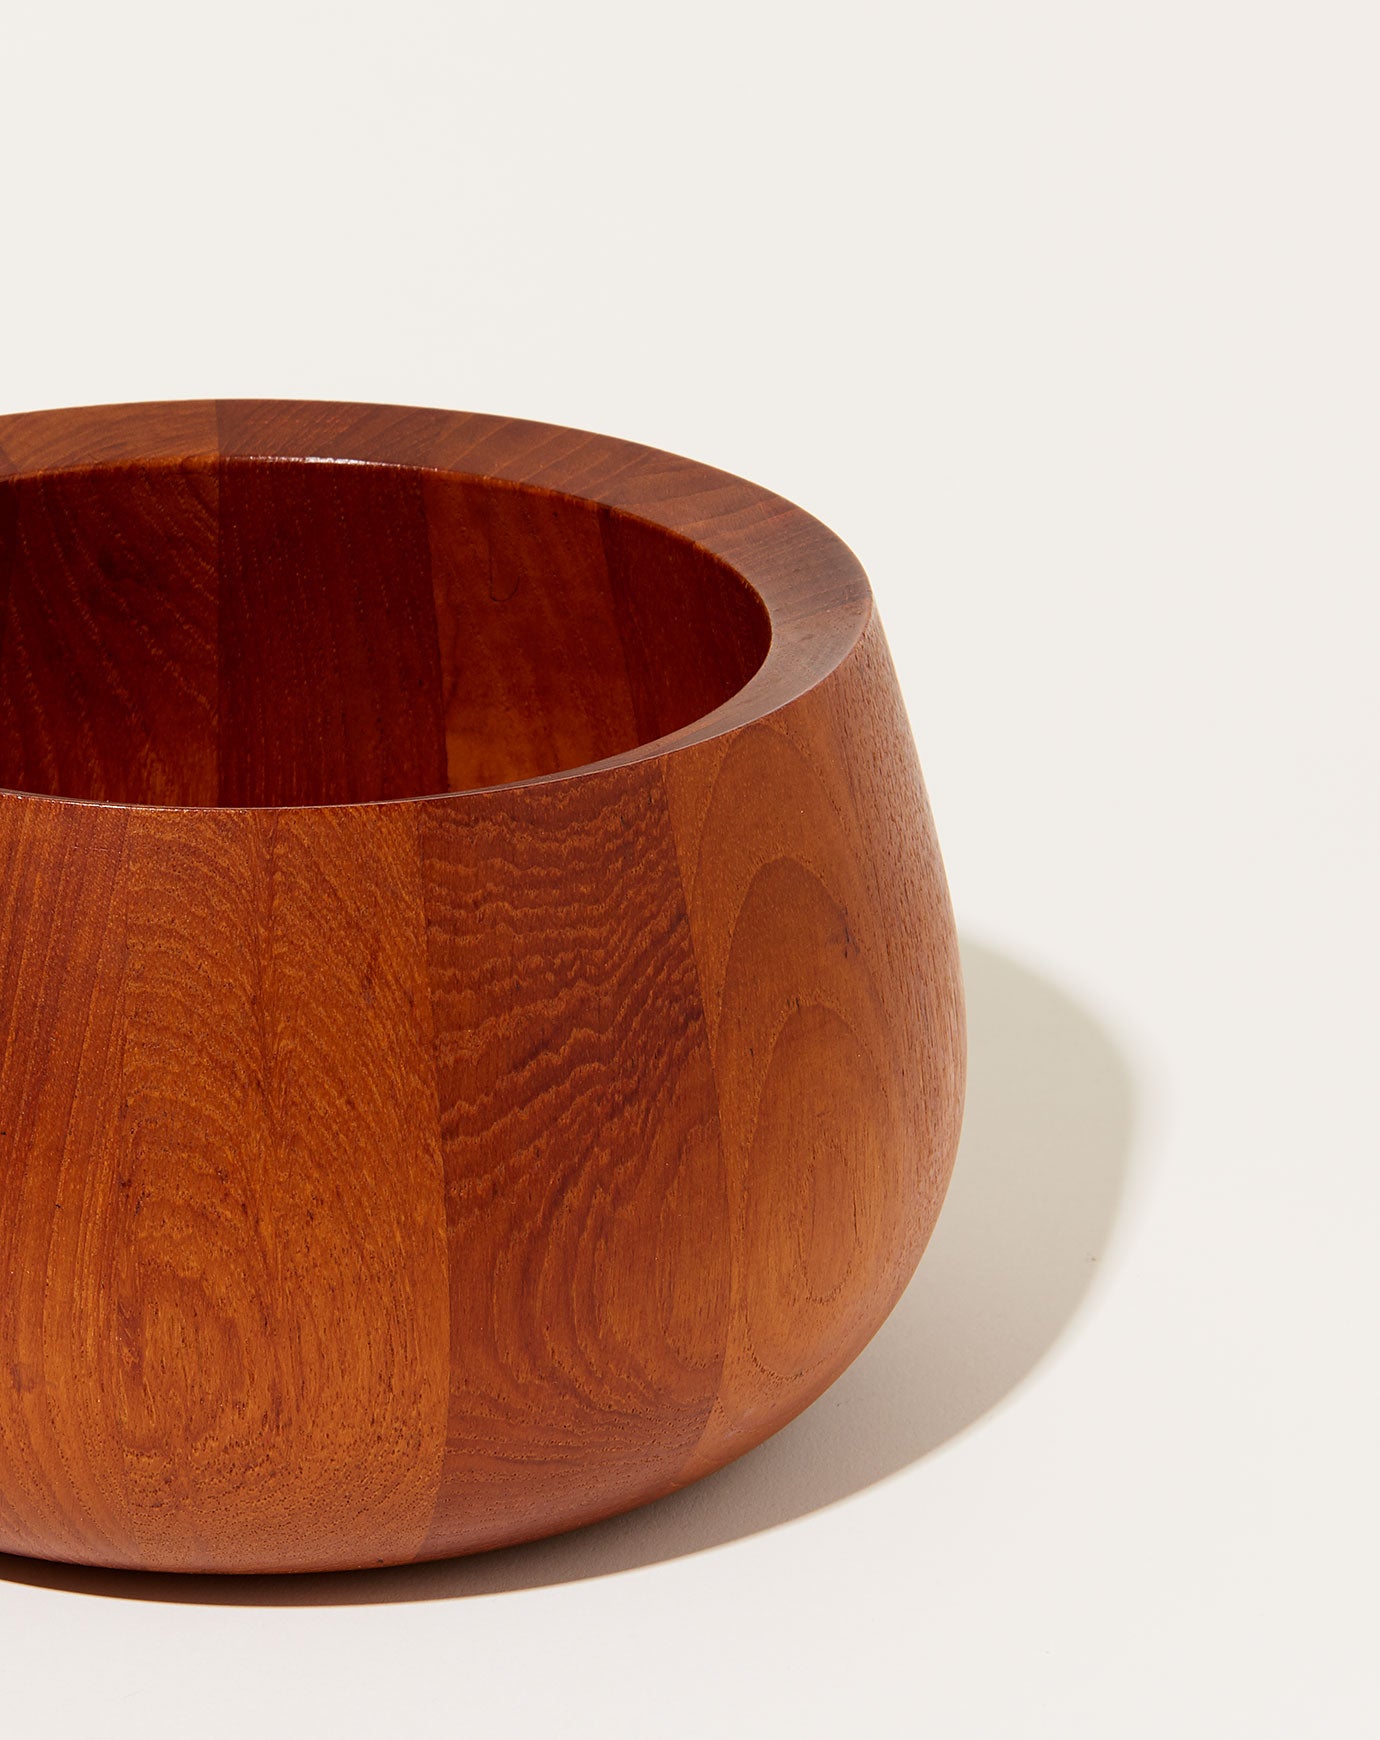 Dansk Wooden Bowl